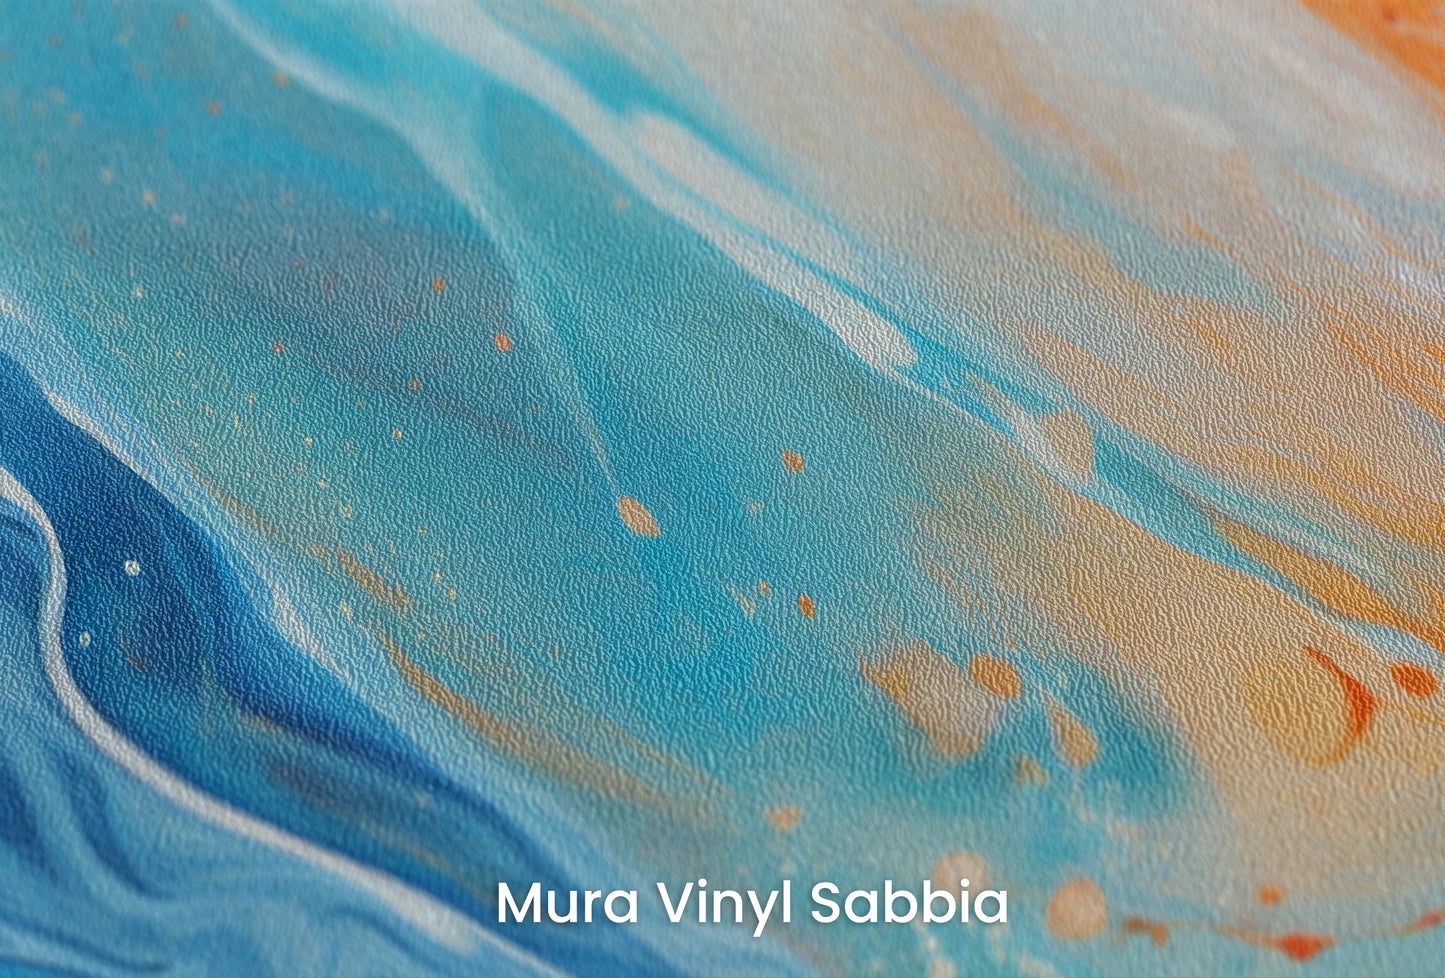 Zbliżenie na artystyczną fototapetę o nazwie Lunar Landscape na podłożu Mura Vinyl Sabbia struktura grubego ziarna piasku.